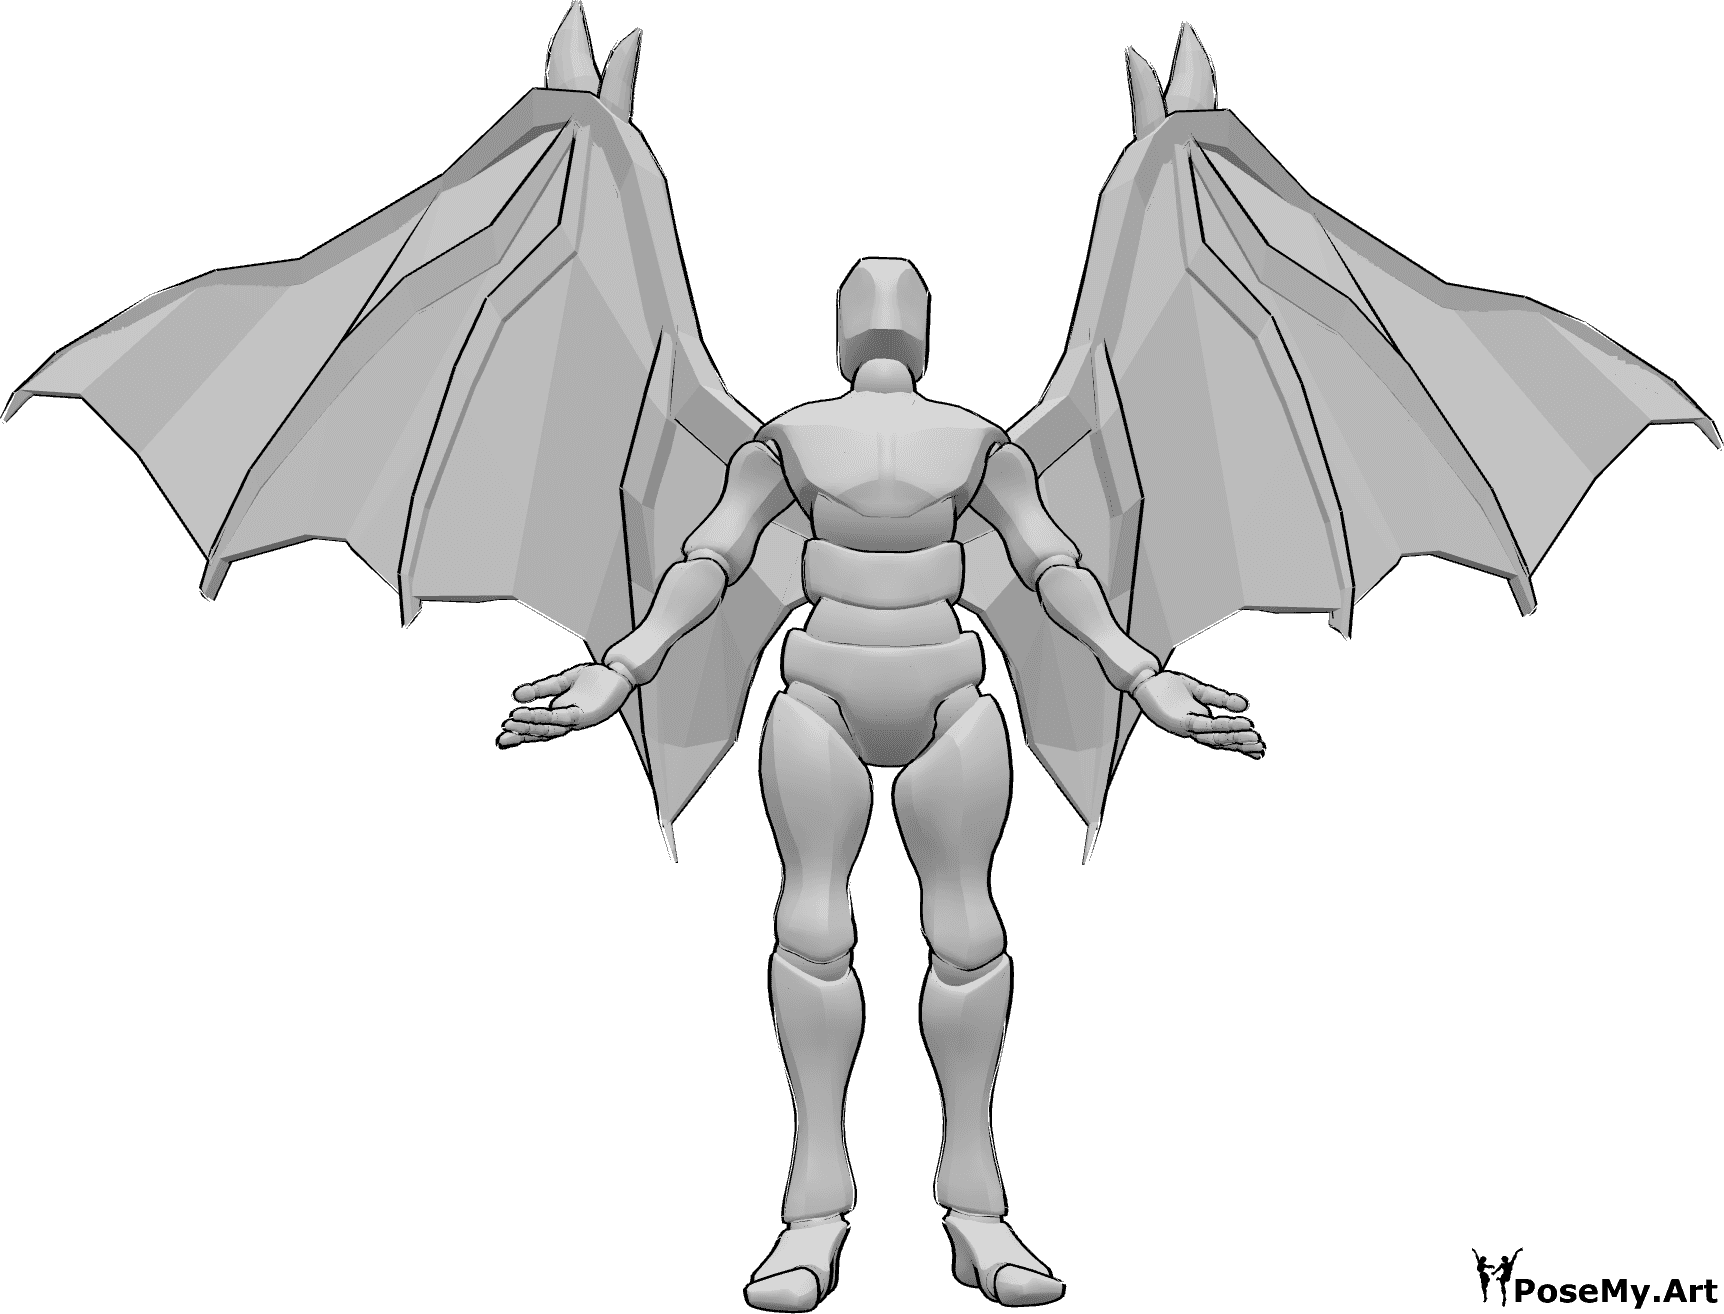 Posen-Referenz- Teufelsflügel stehende Pose - Männchen mit Teufelsflügeln steht, blickt nach oben und hebt die Hände